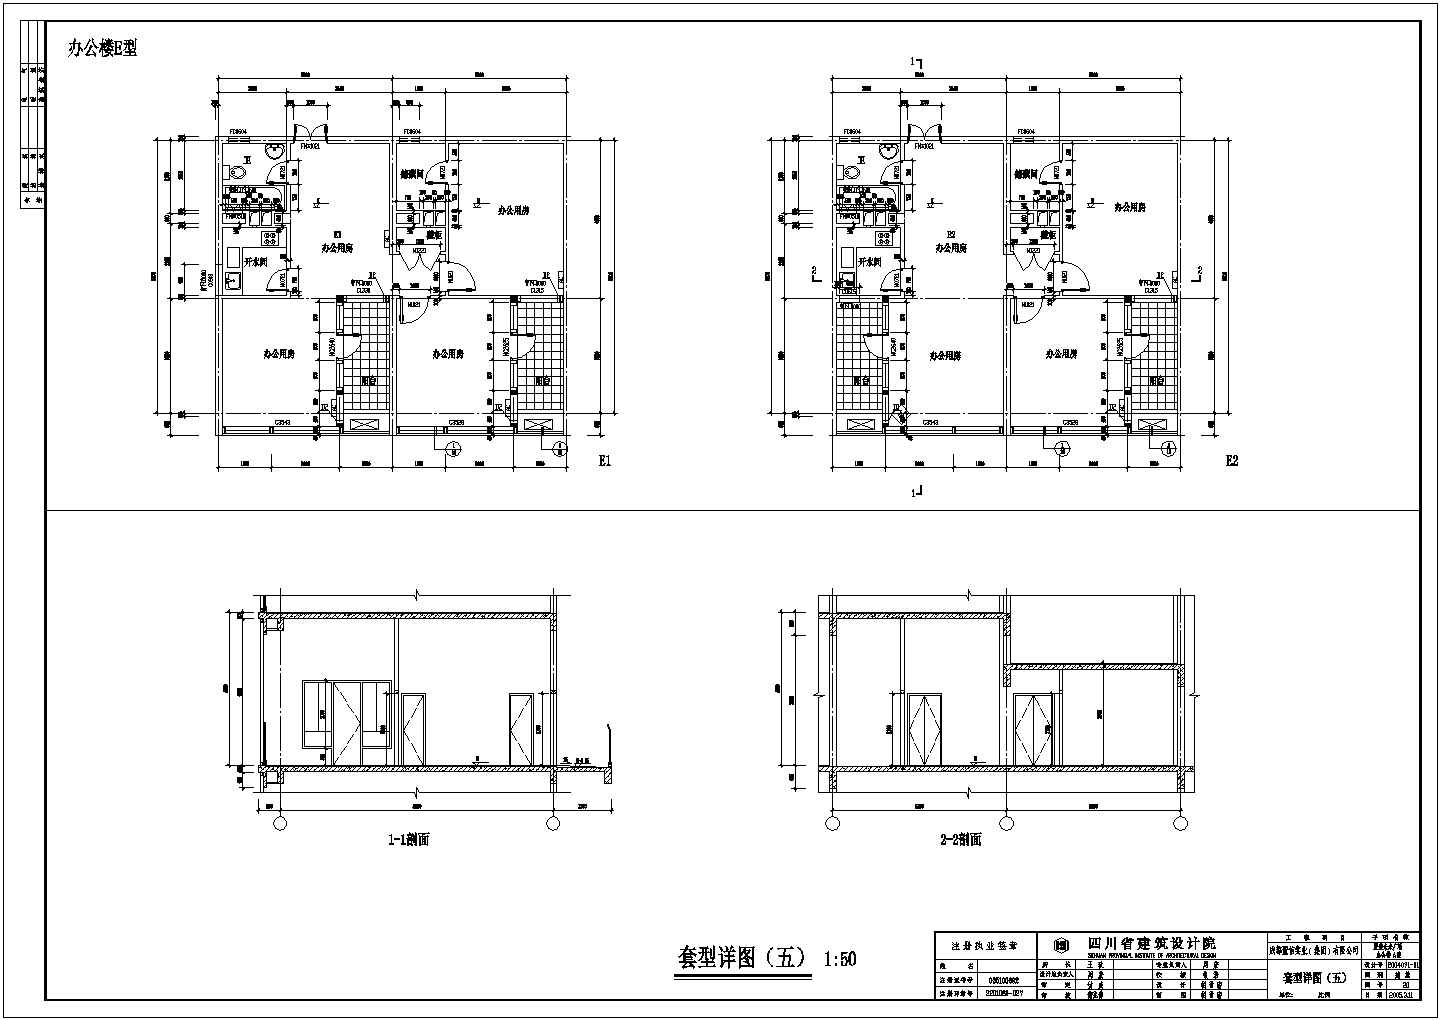 成都某广场七层办公楼建筑设计施工图